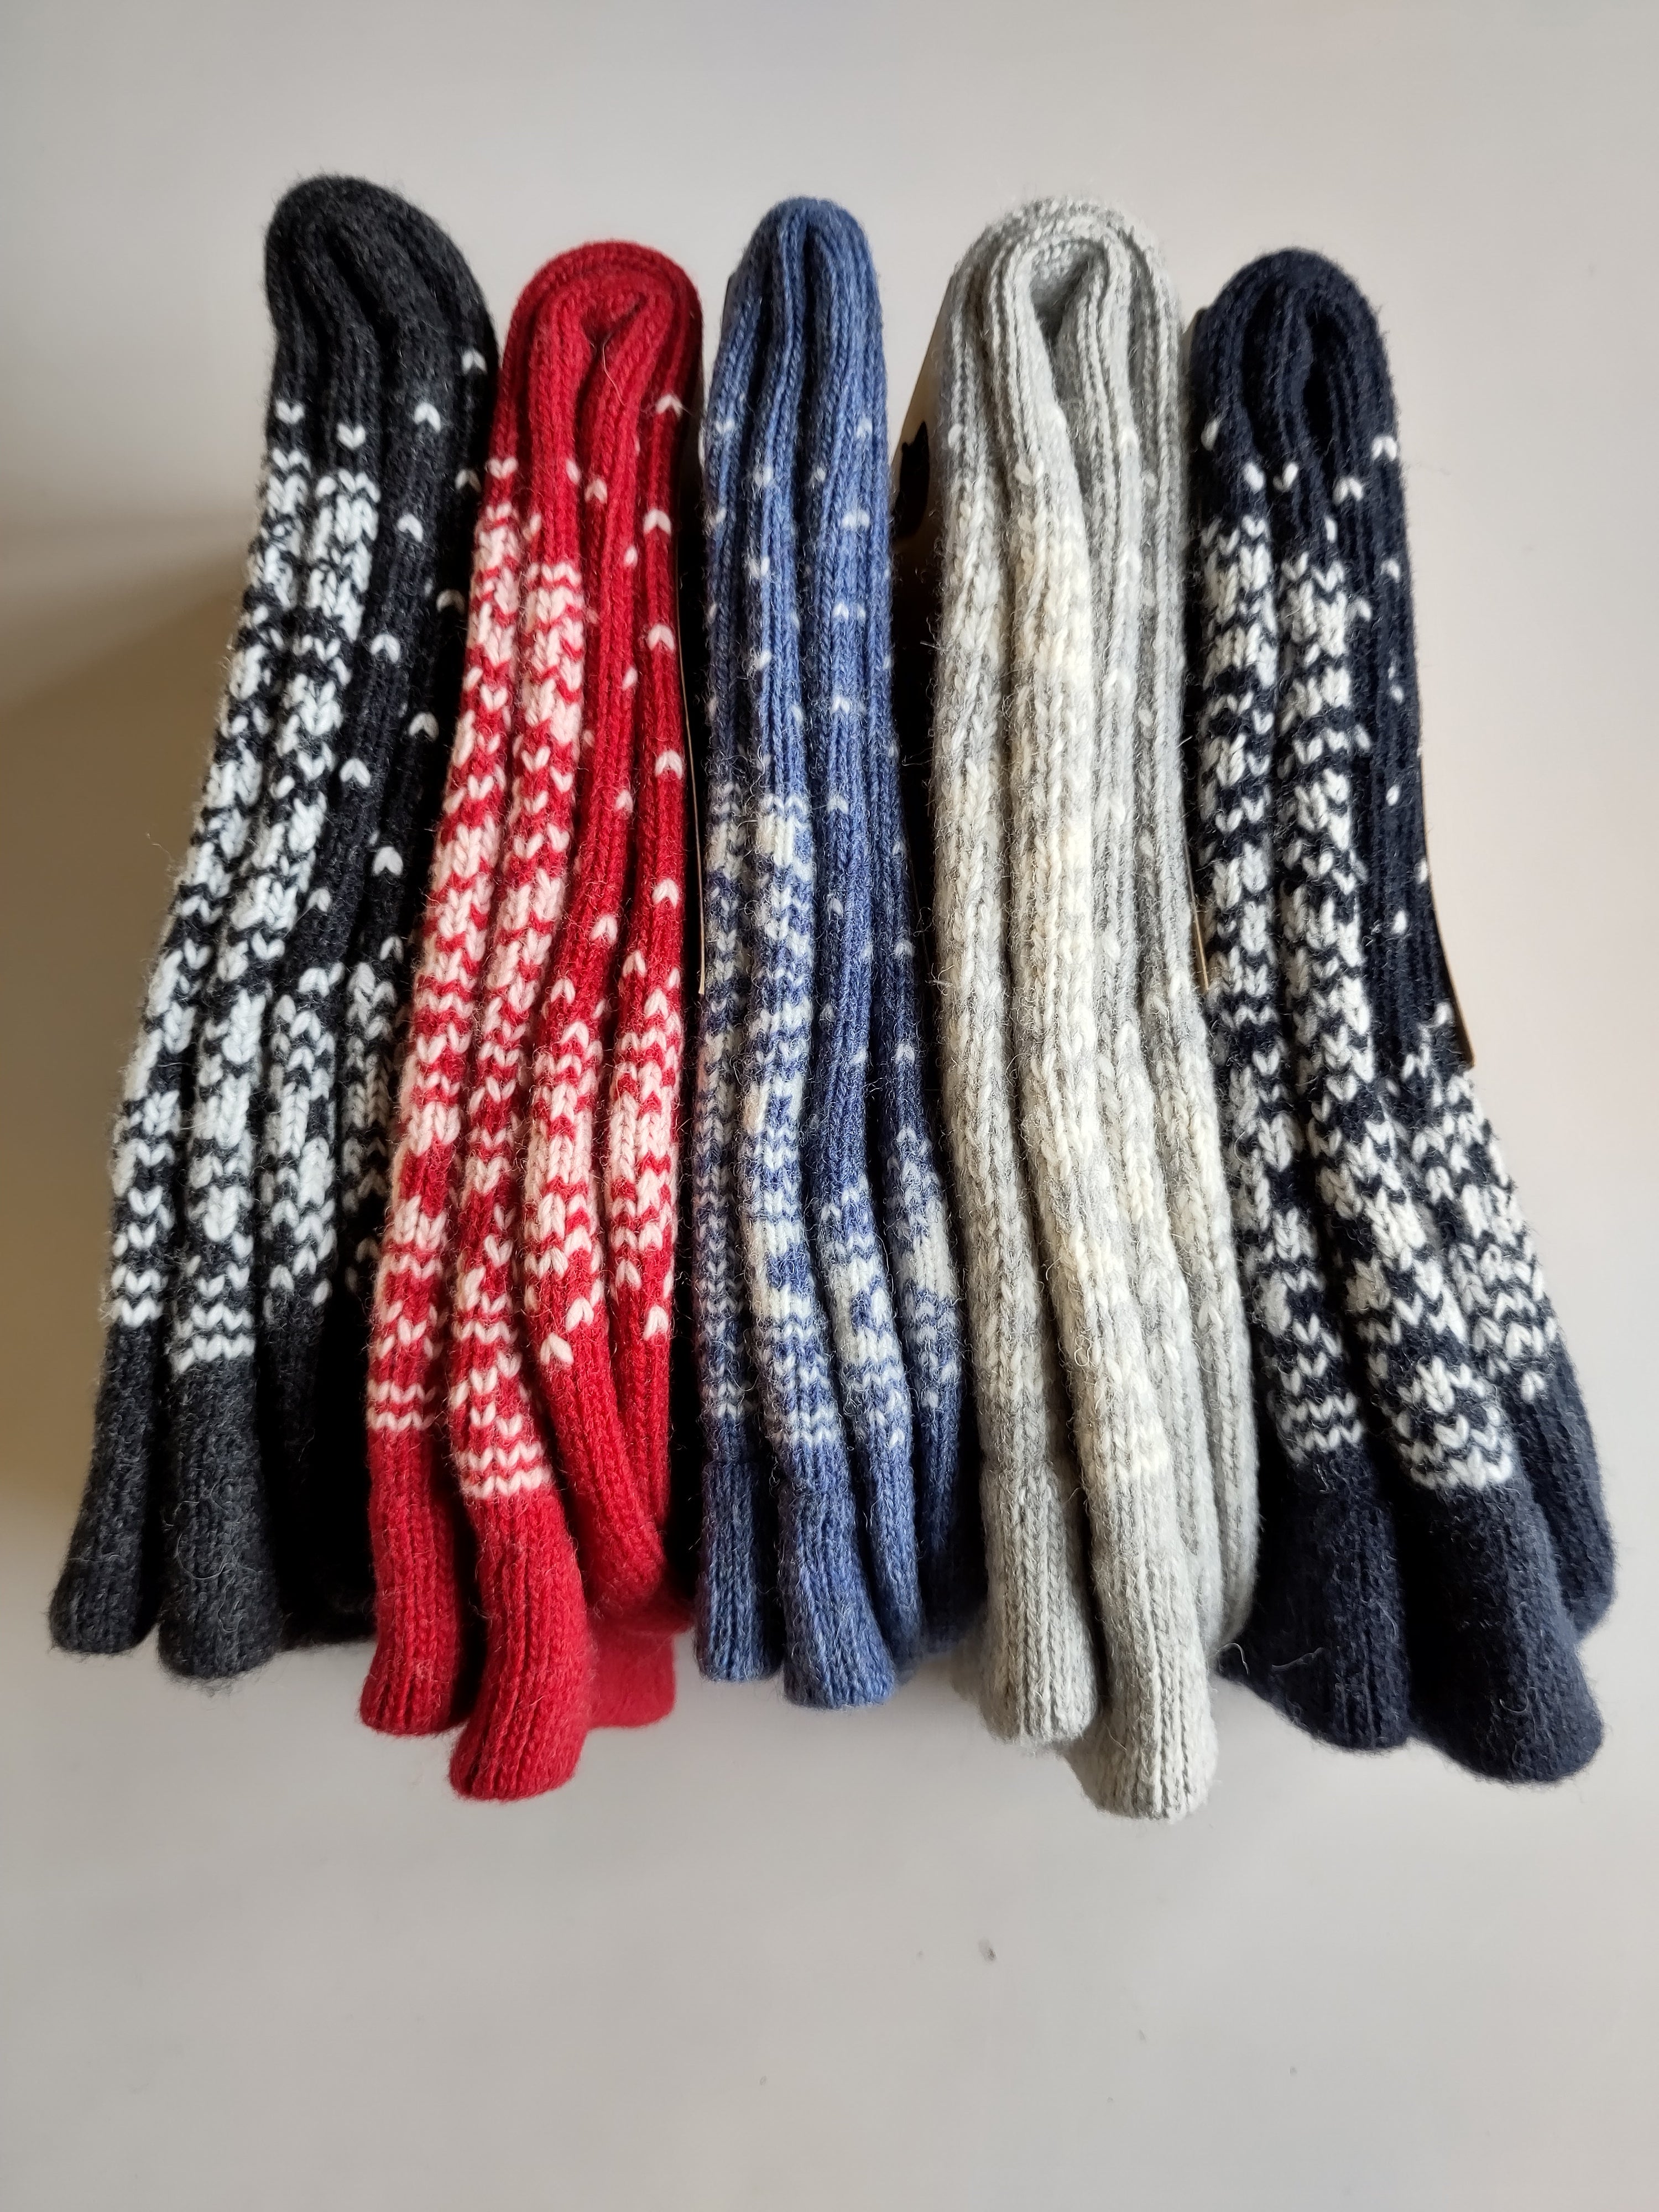 Wollen sokken / Danestay Warm Wool Socks Navy/White - Danefae / Dyr